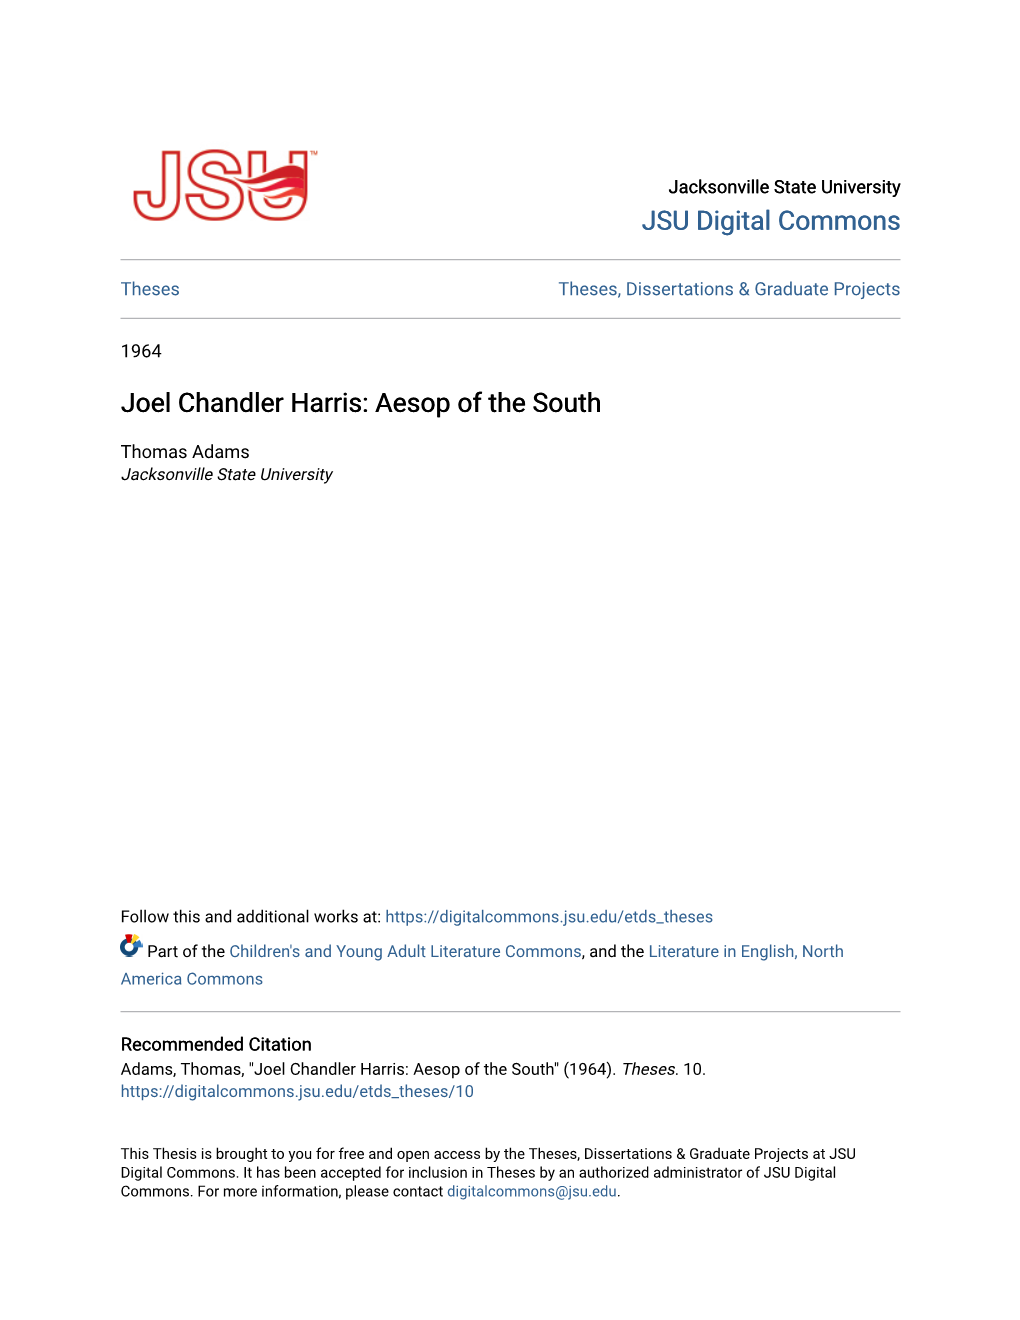 Joel Chandler Harris: Aesop of the South